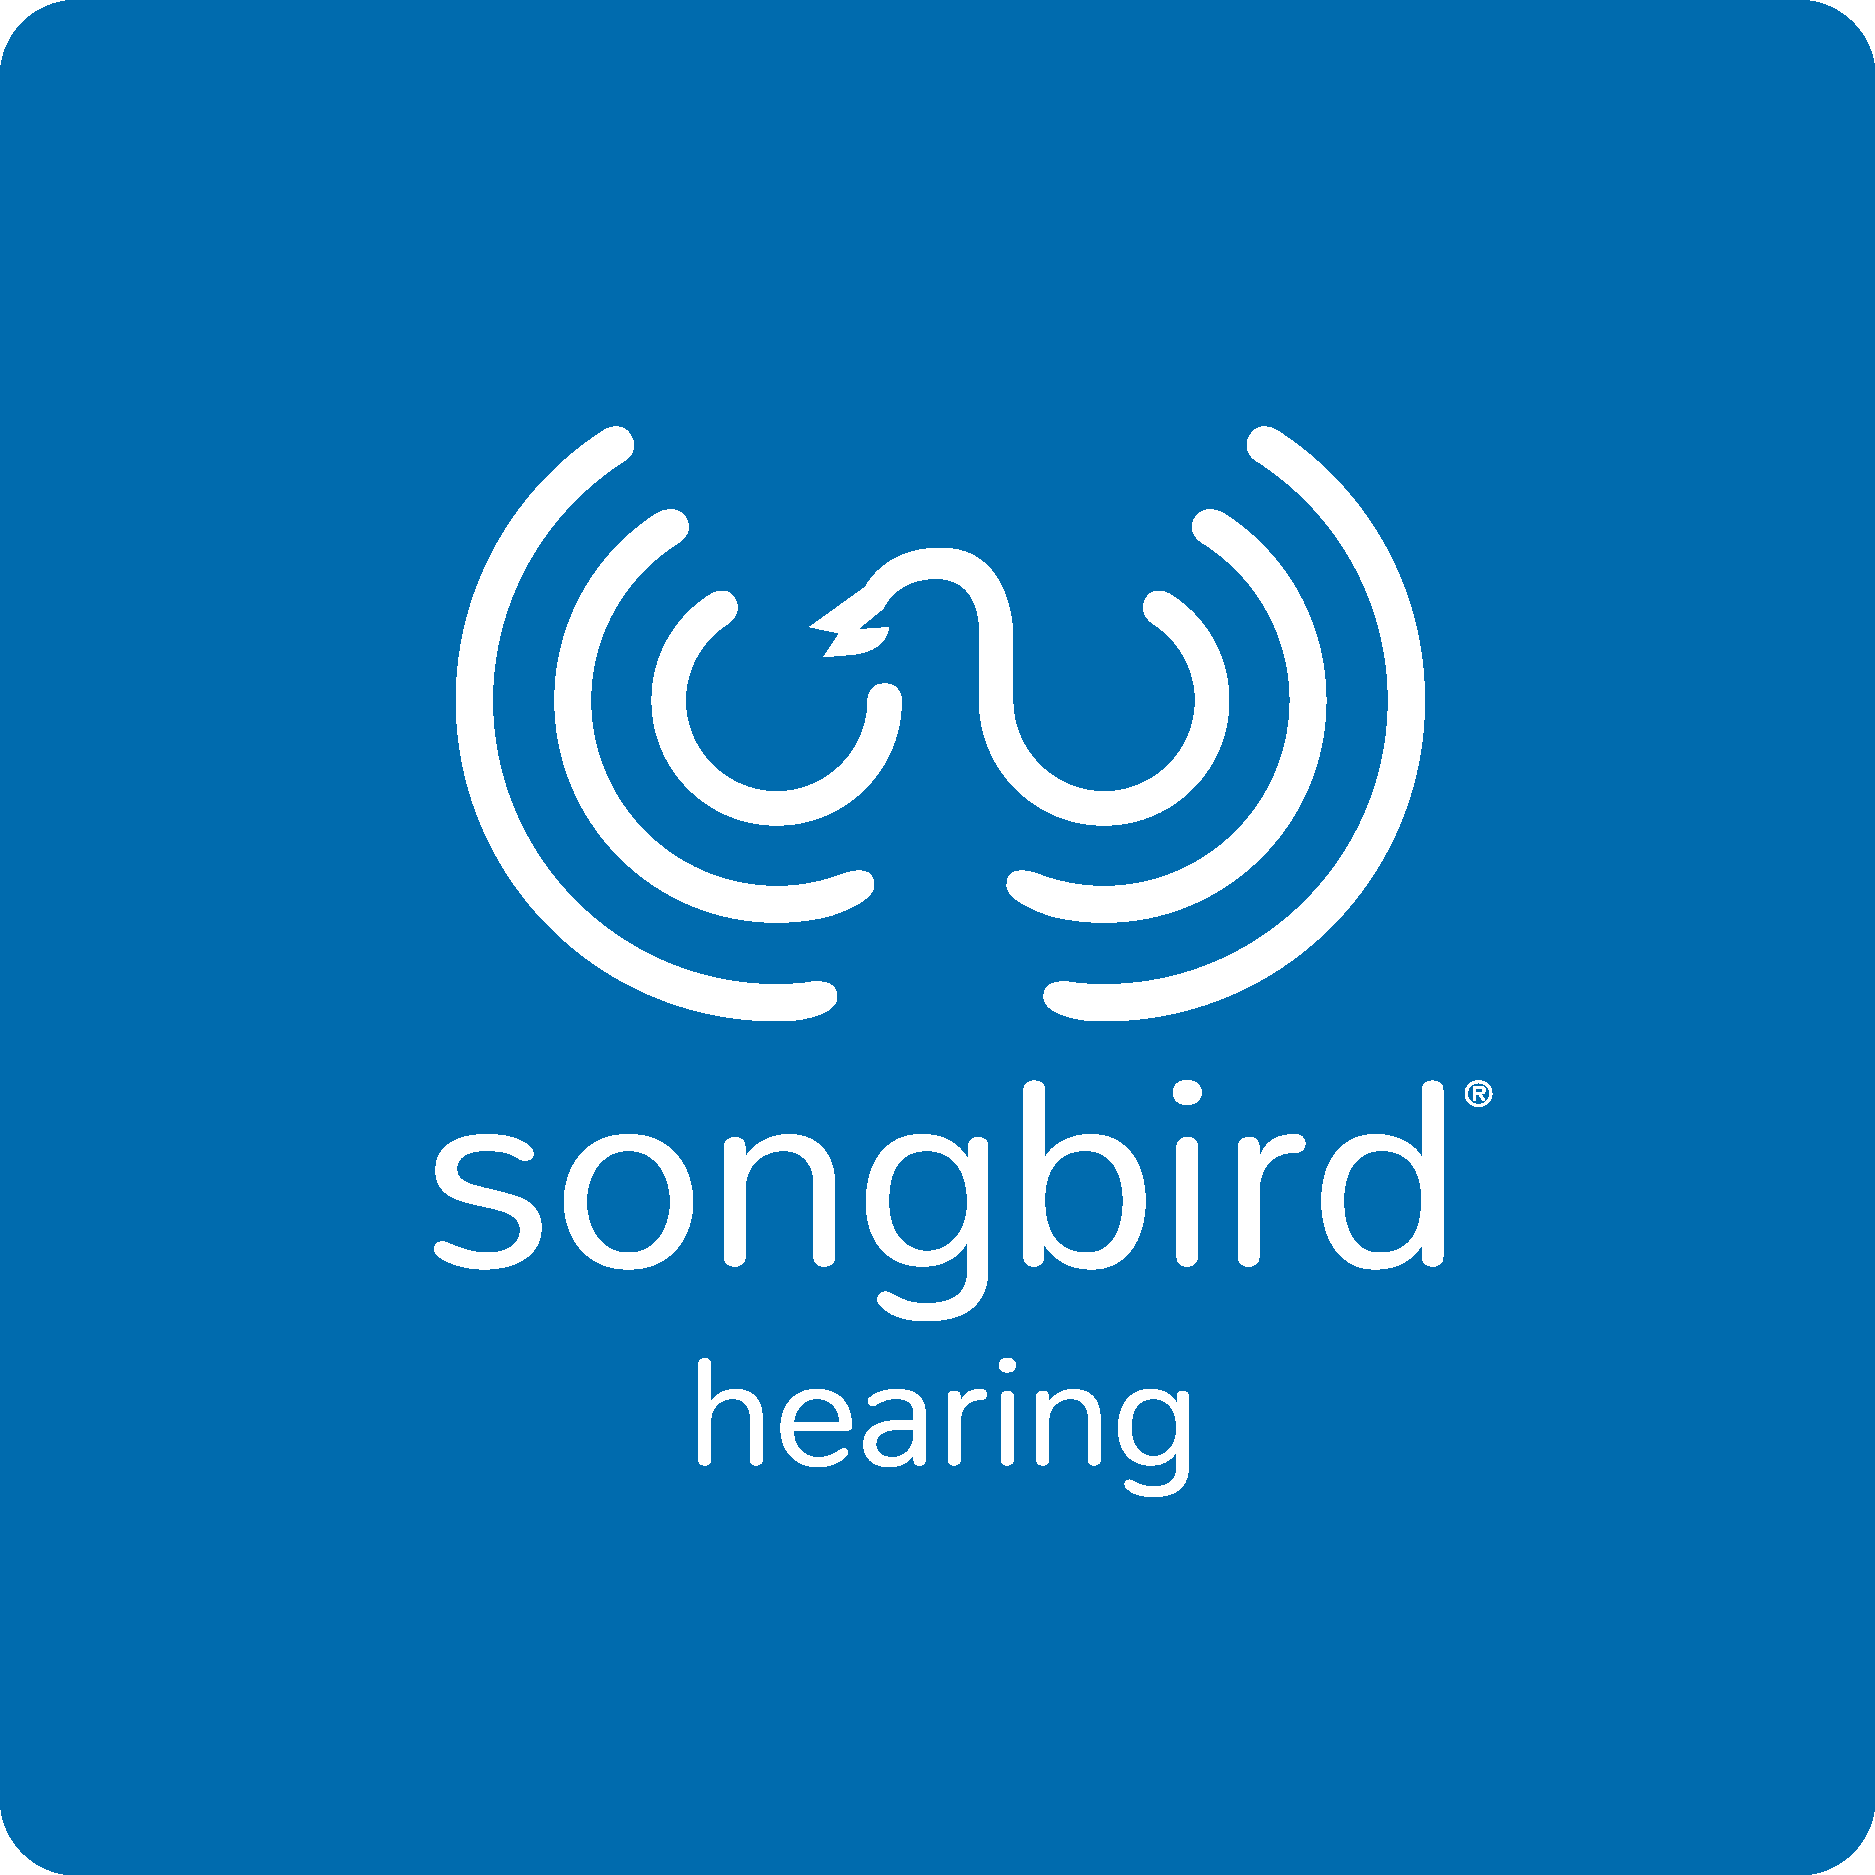 Songbird Hearing Logo Vector